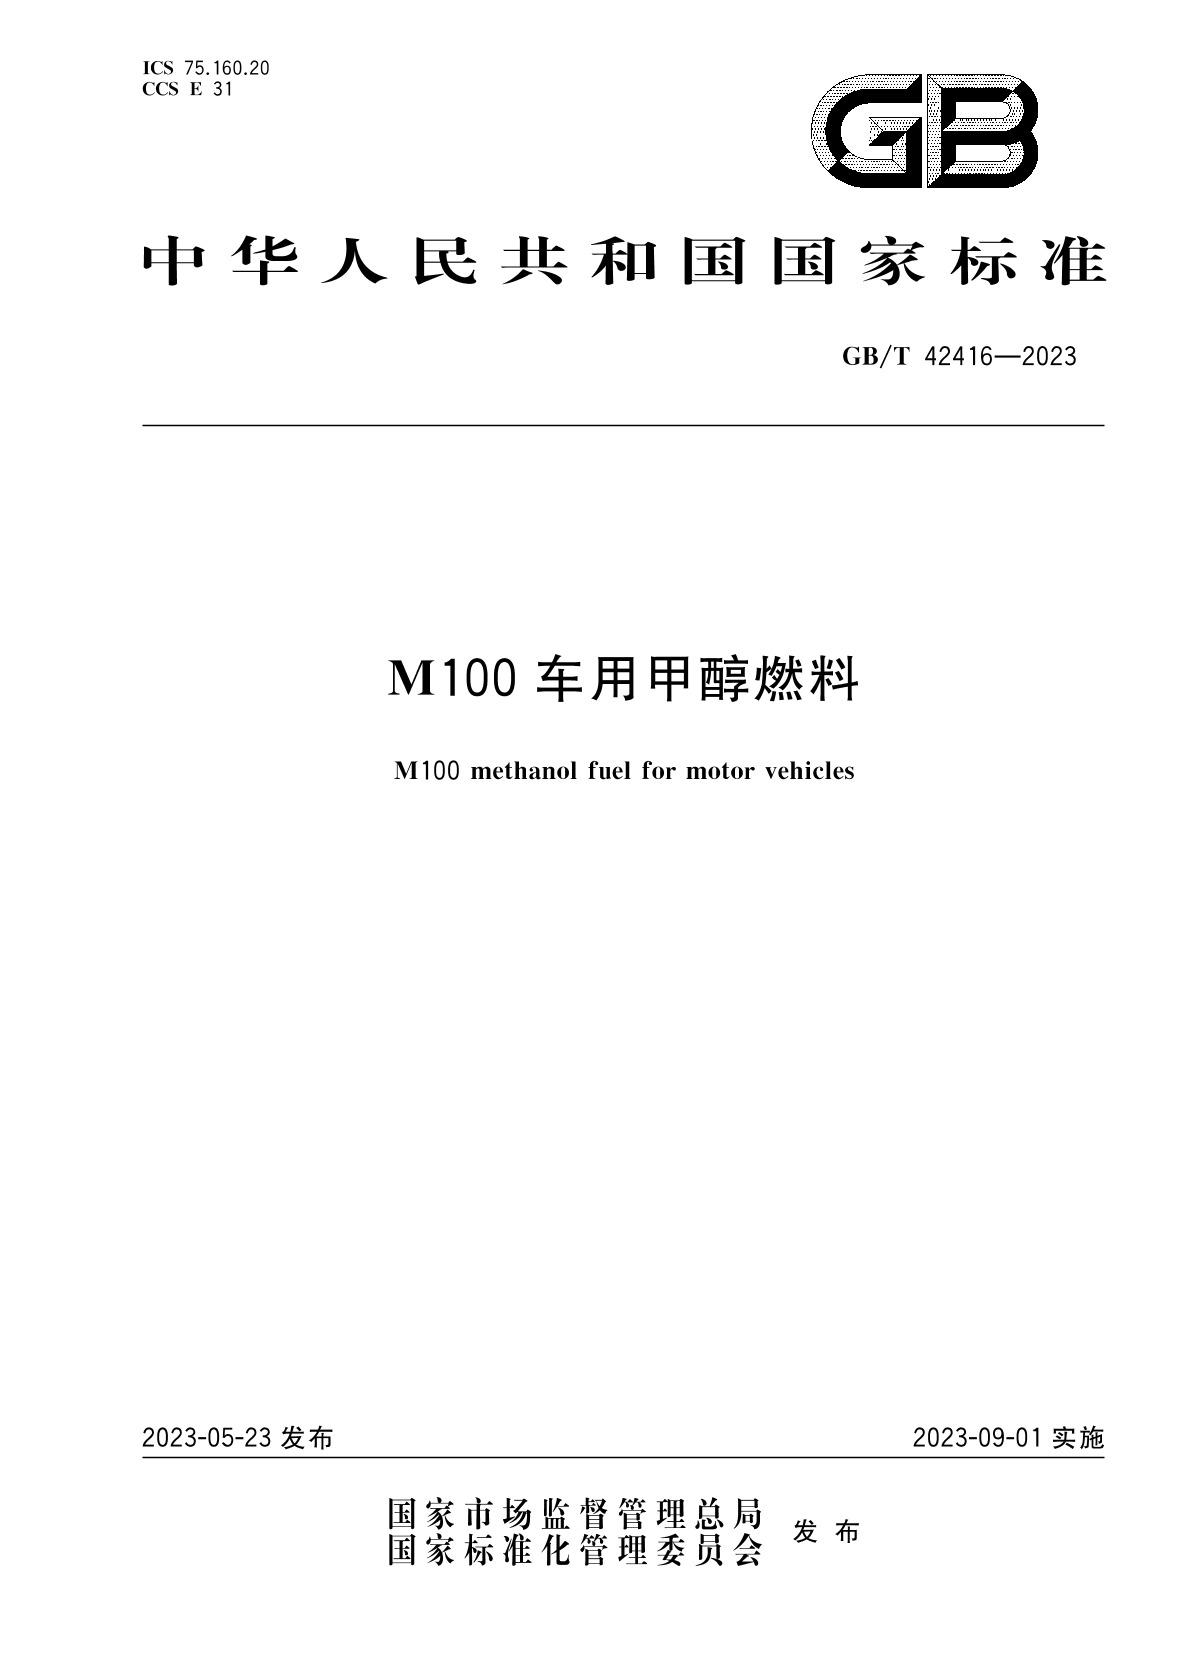 m100甲醇燃料国家标准